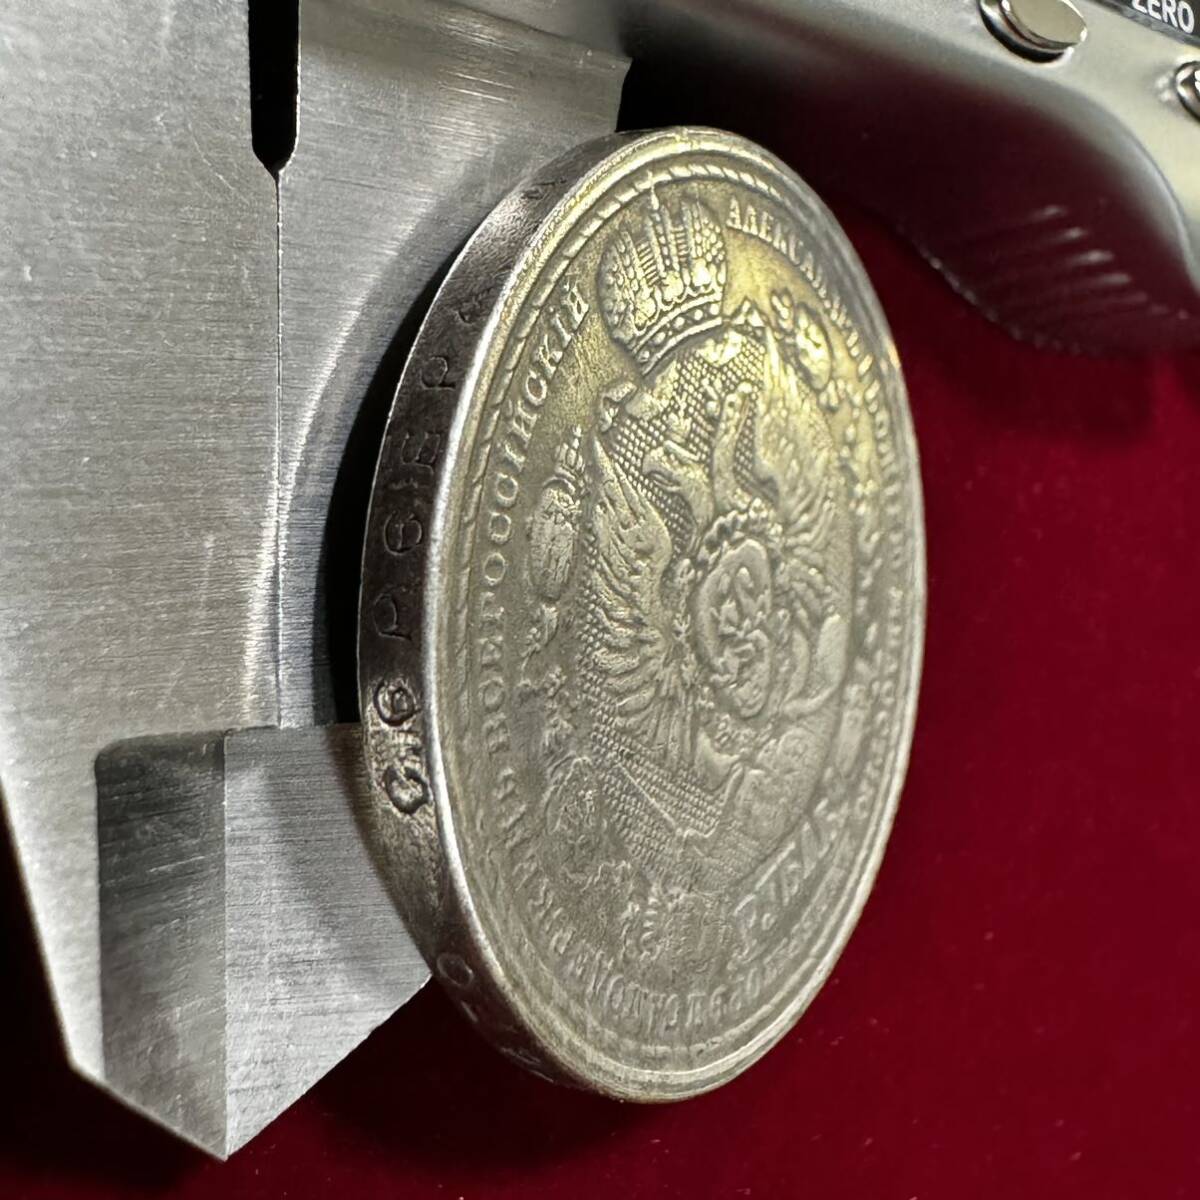 ロシア帝国 硬貨 古銭 1812年の愛国戦争 1912年 フランス帝国侵攻 100周年記念 国章 ルーブル コイン 銀貨 外国古銭 海外硬貨の画像3